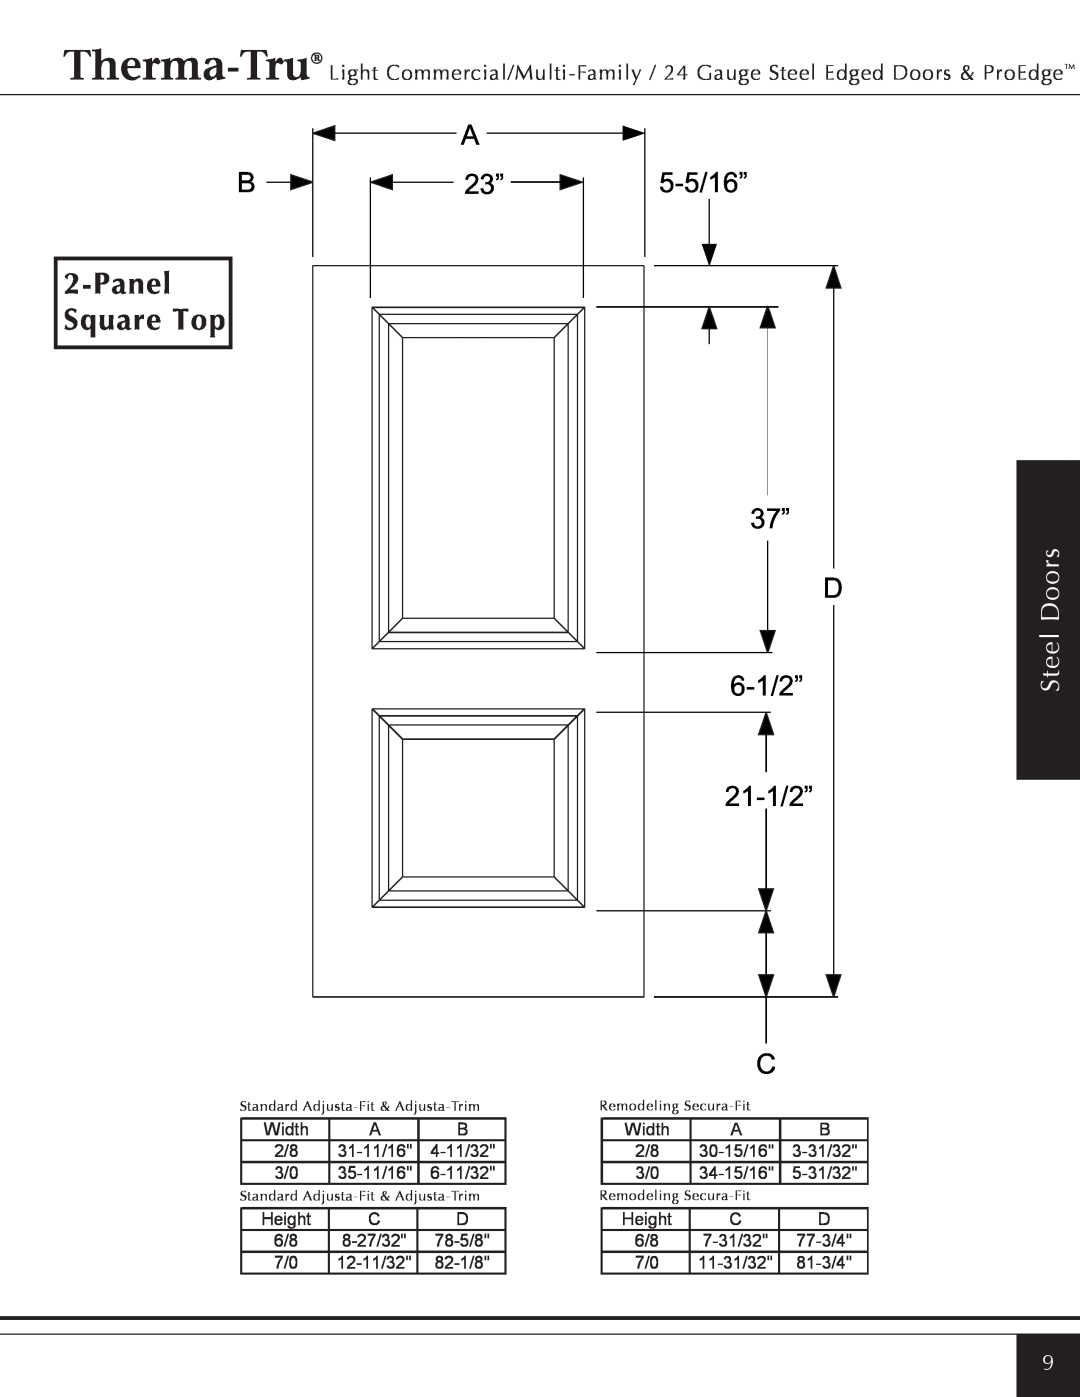 Therma-Tru Light Commercial/Multi-Family / 22 & 24 Gauge Steel Edged Door PanelSquare Top, 5-5/16” 37” D 6-1/2” 21-1/2” 